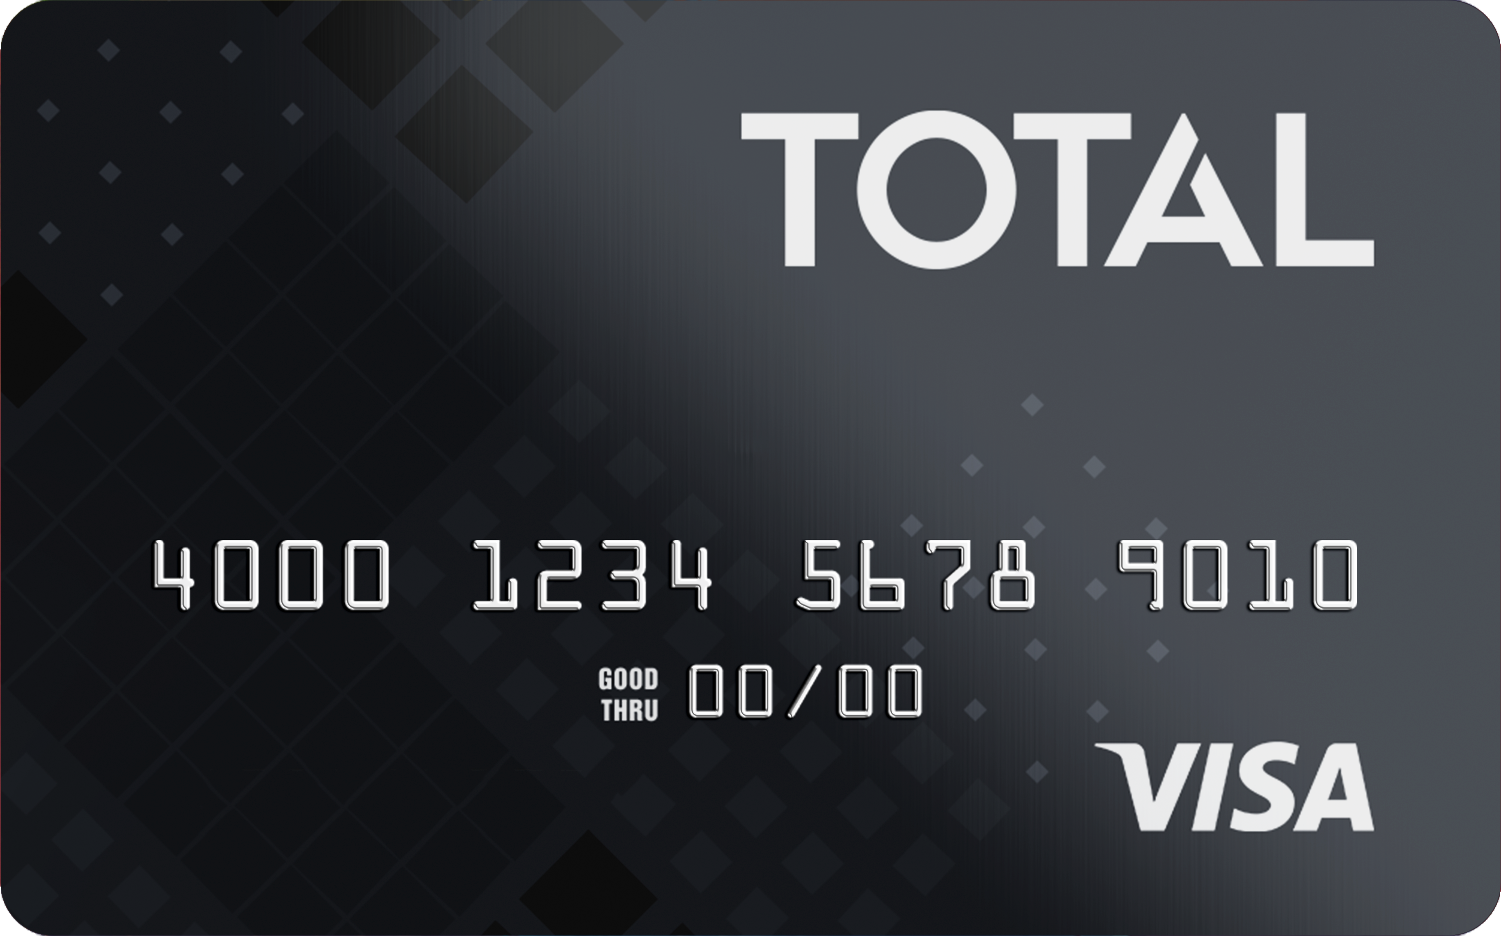 Black Total VISA Credit Card, designed for poor credit